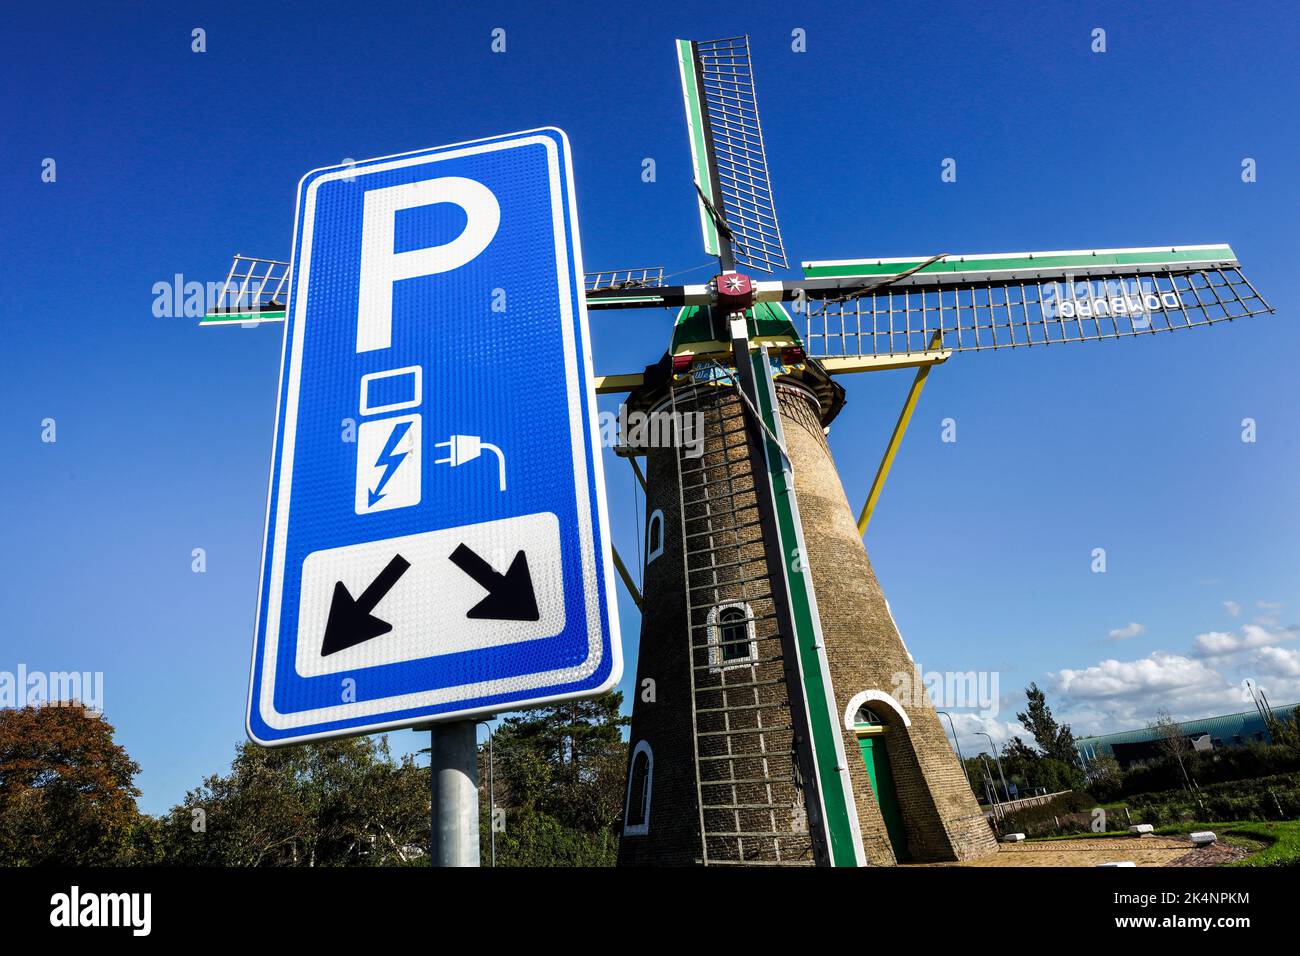 Elettricità da energia eolica: Parcheggio con punto di ricarica per veicoli elettrici di fronte allo storico mulino a vento dal 1817 a Domburg, nei Paesi Bassi Foto Stock